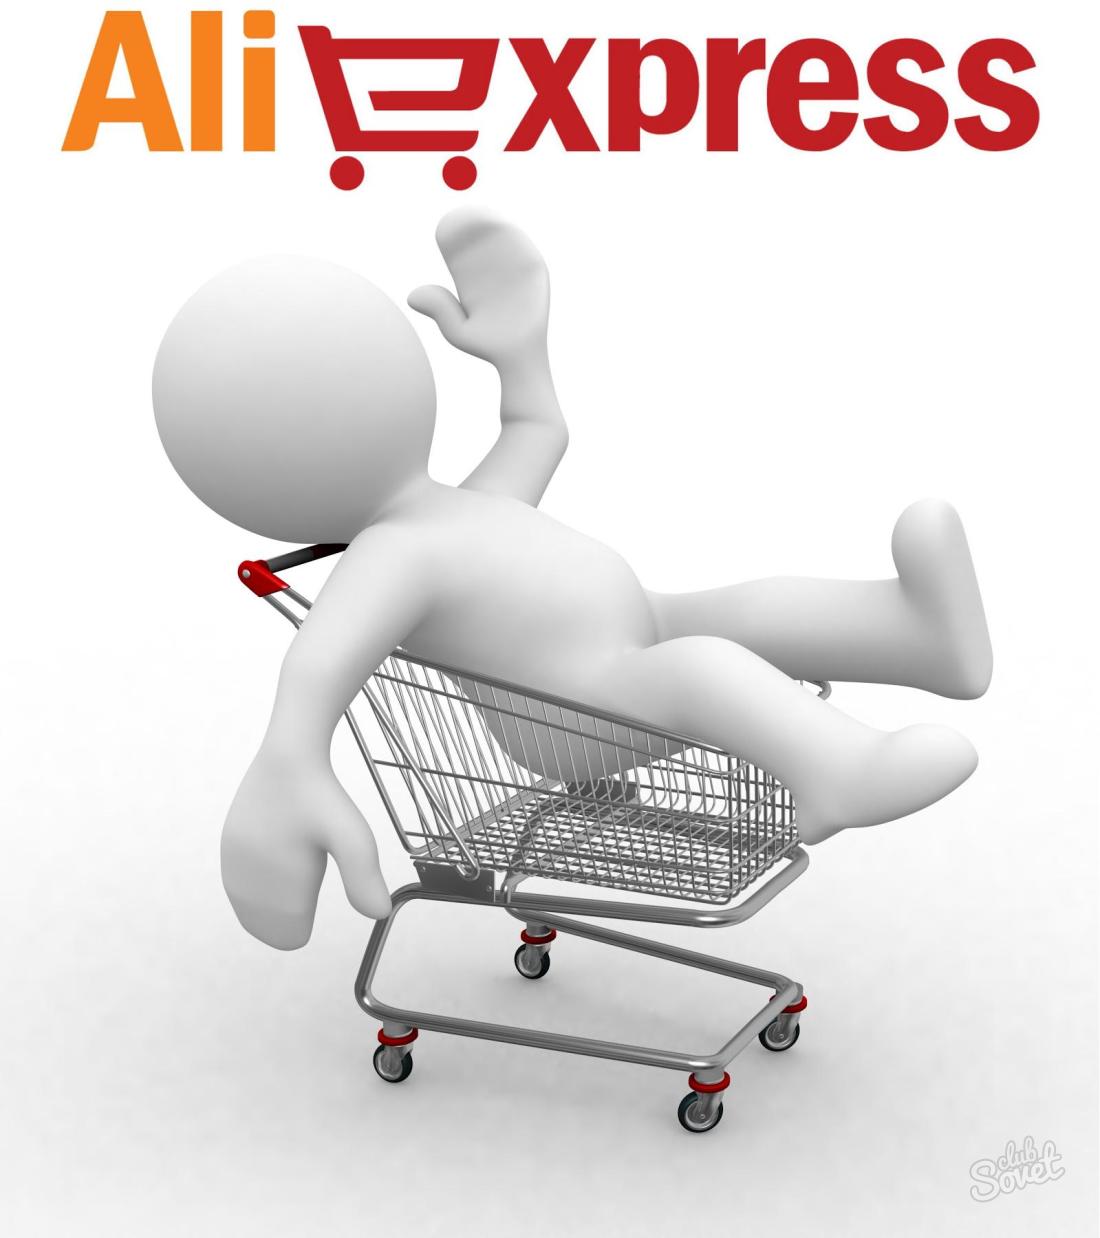 Aliexpress.com'da